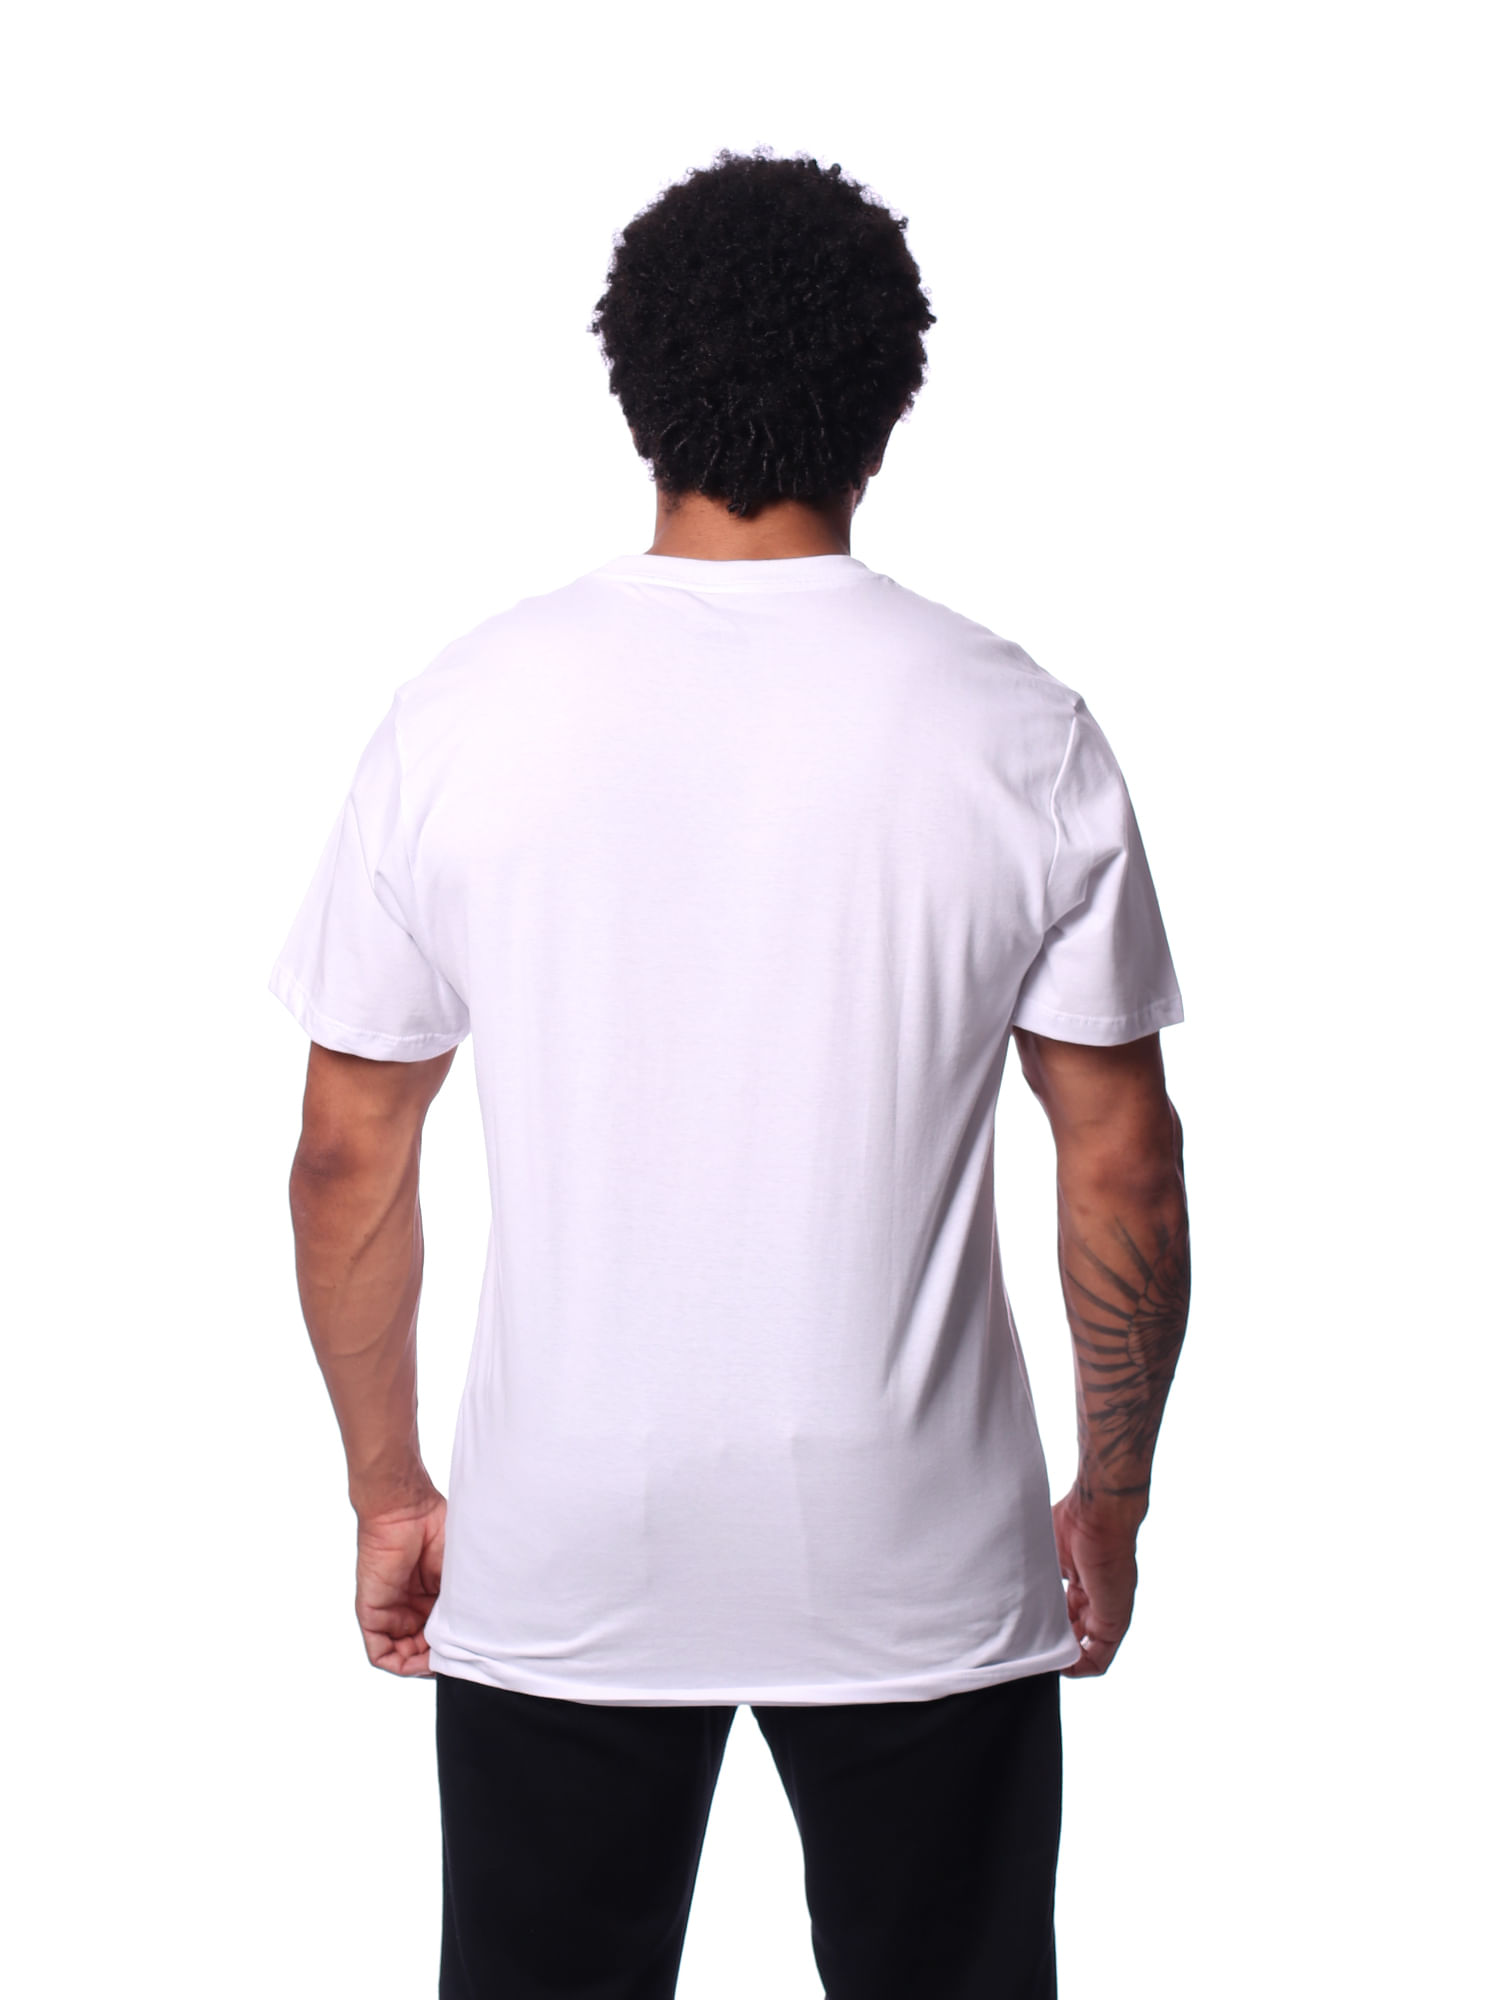 Camiseta-quiksilver-embroidery-Branco